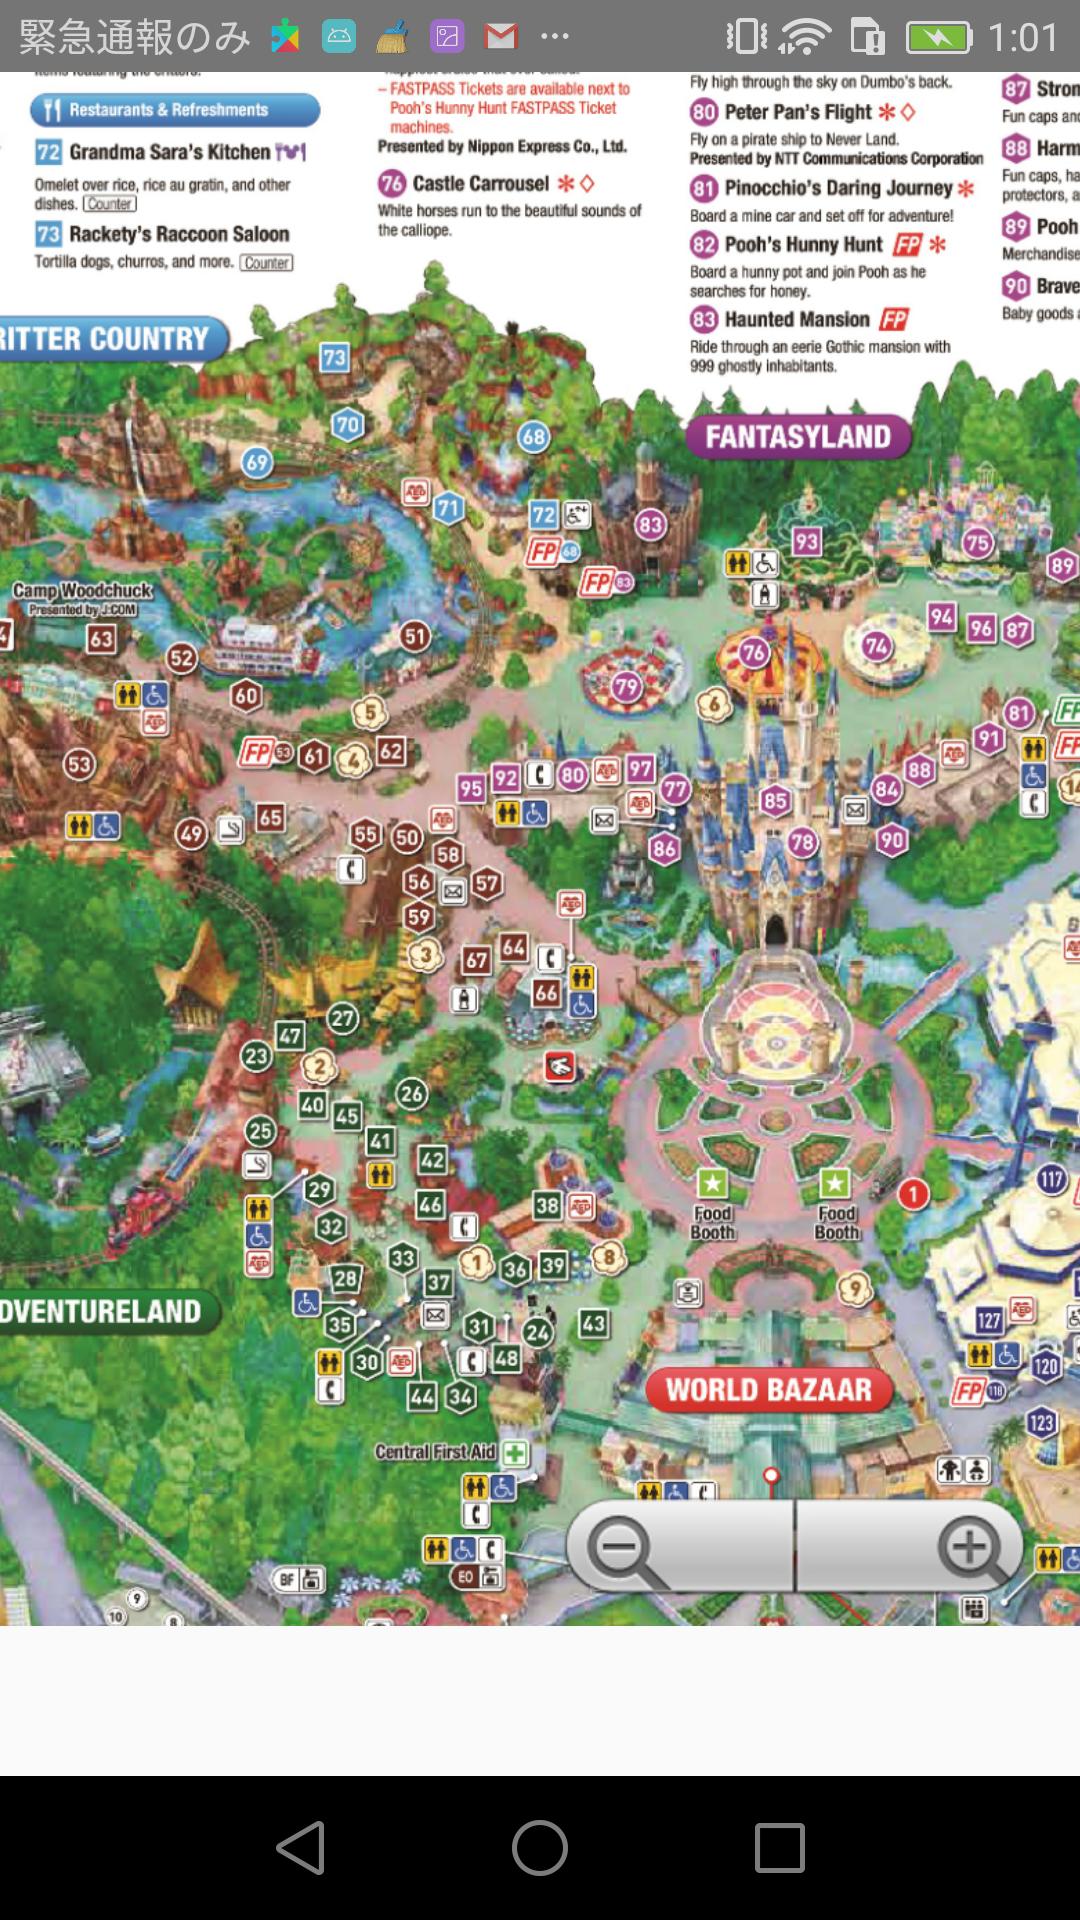 Tokyo Disneyland Disneysea Map Offlineー東京ディズニーマップ For Android Apk Download